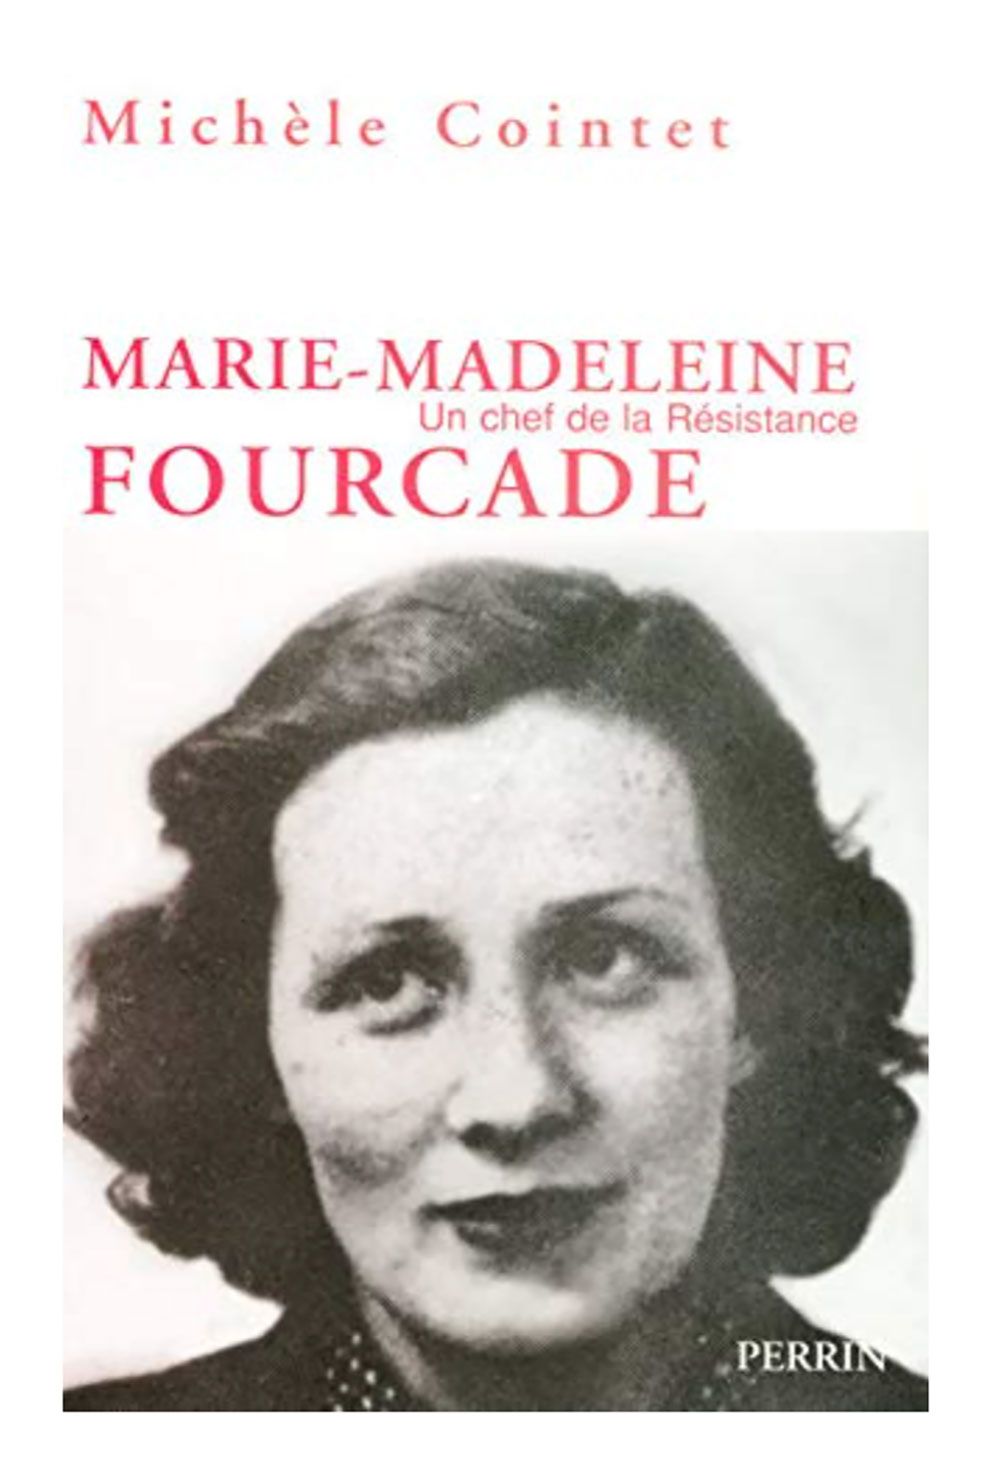 Biografía de Marie-Madelaine Fourcade, combatiente